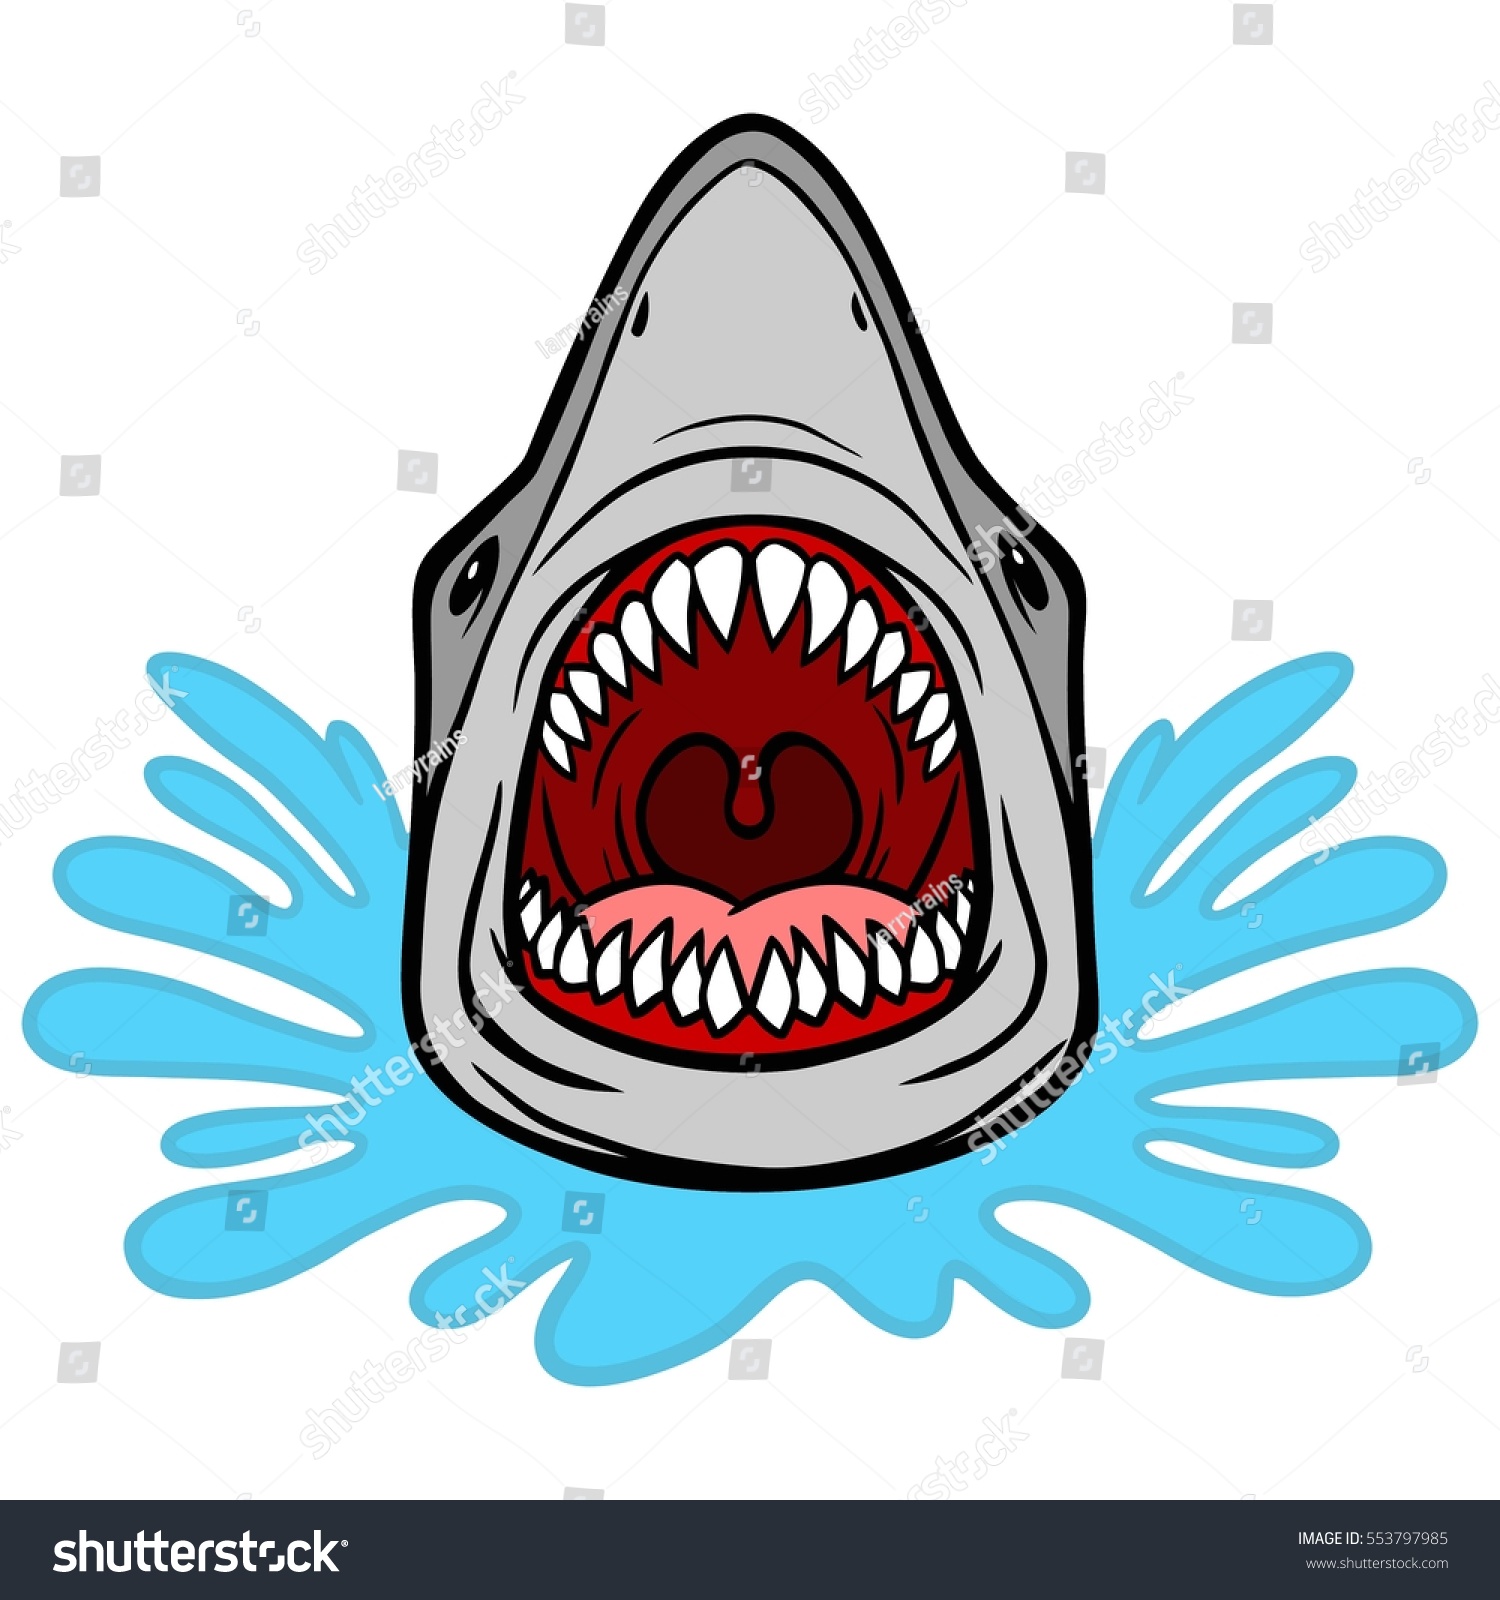 Free Free Shark Bite Svg 377 SVG PNG EPS DXF File